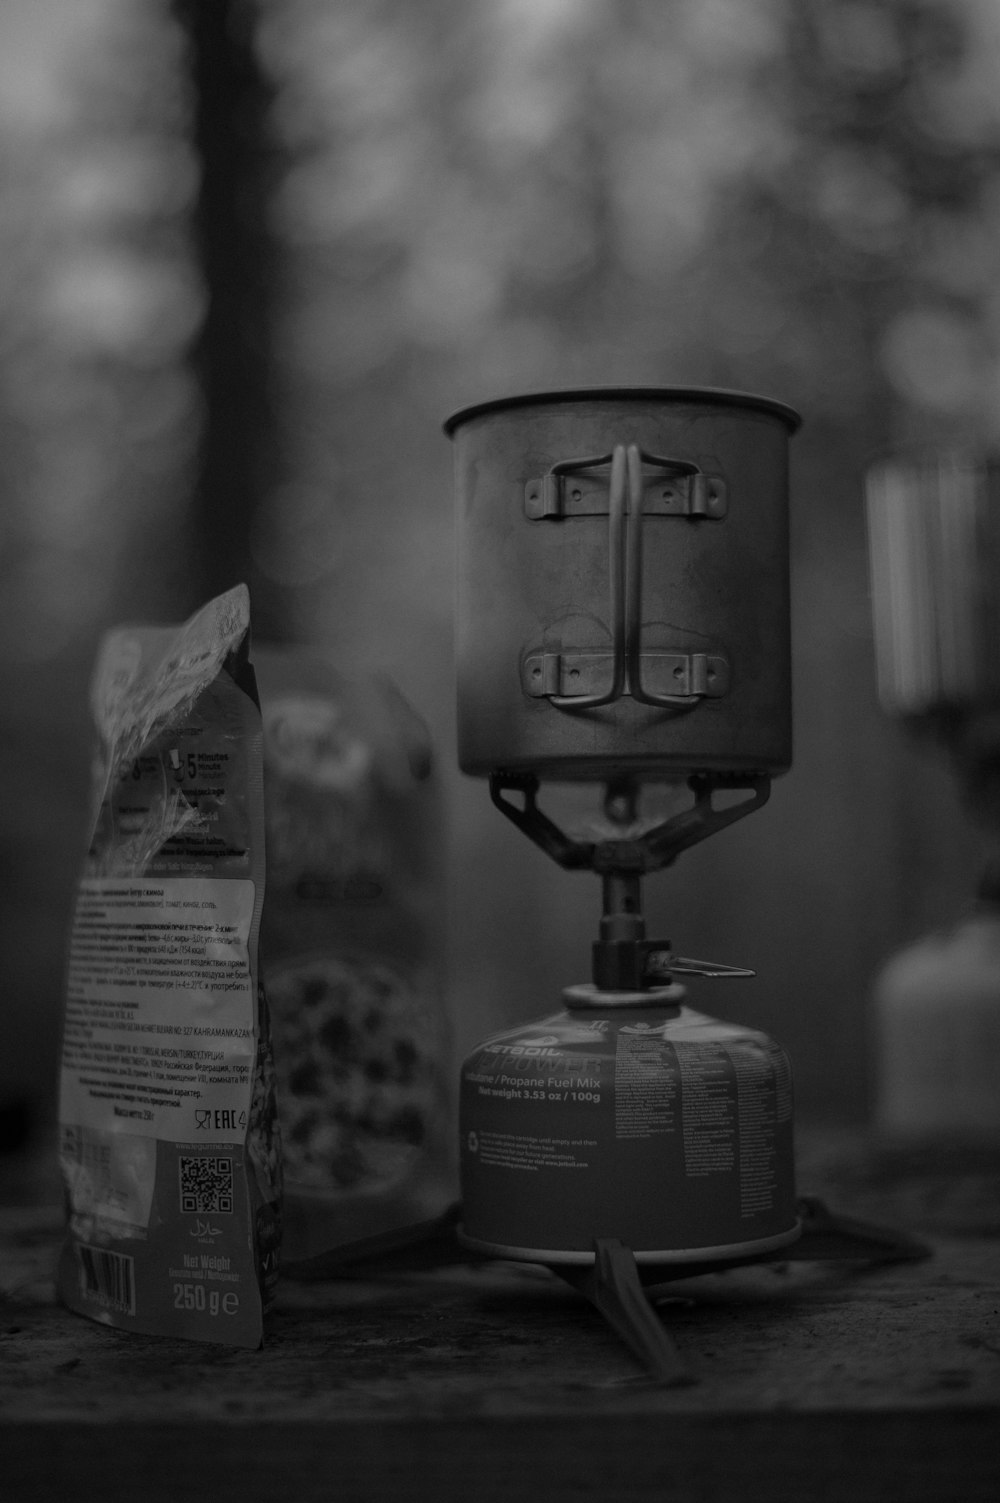 Una foto en blanco y negro de una cafetera